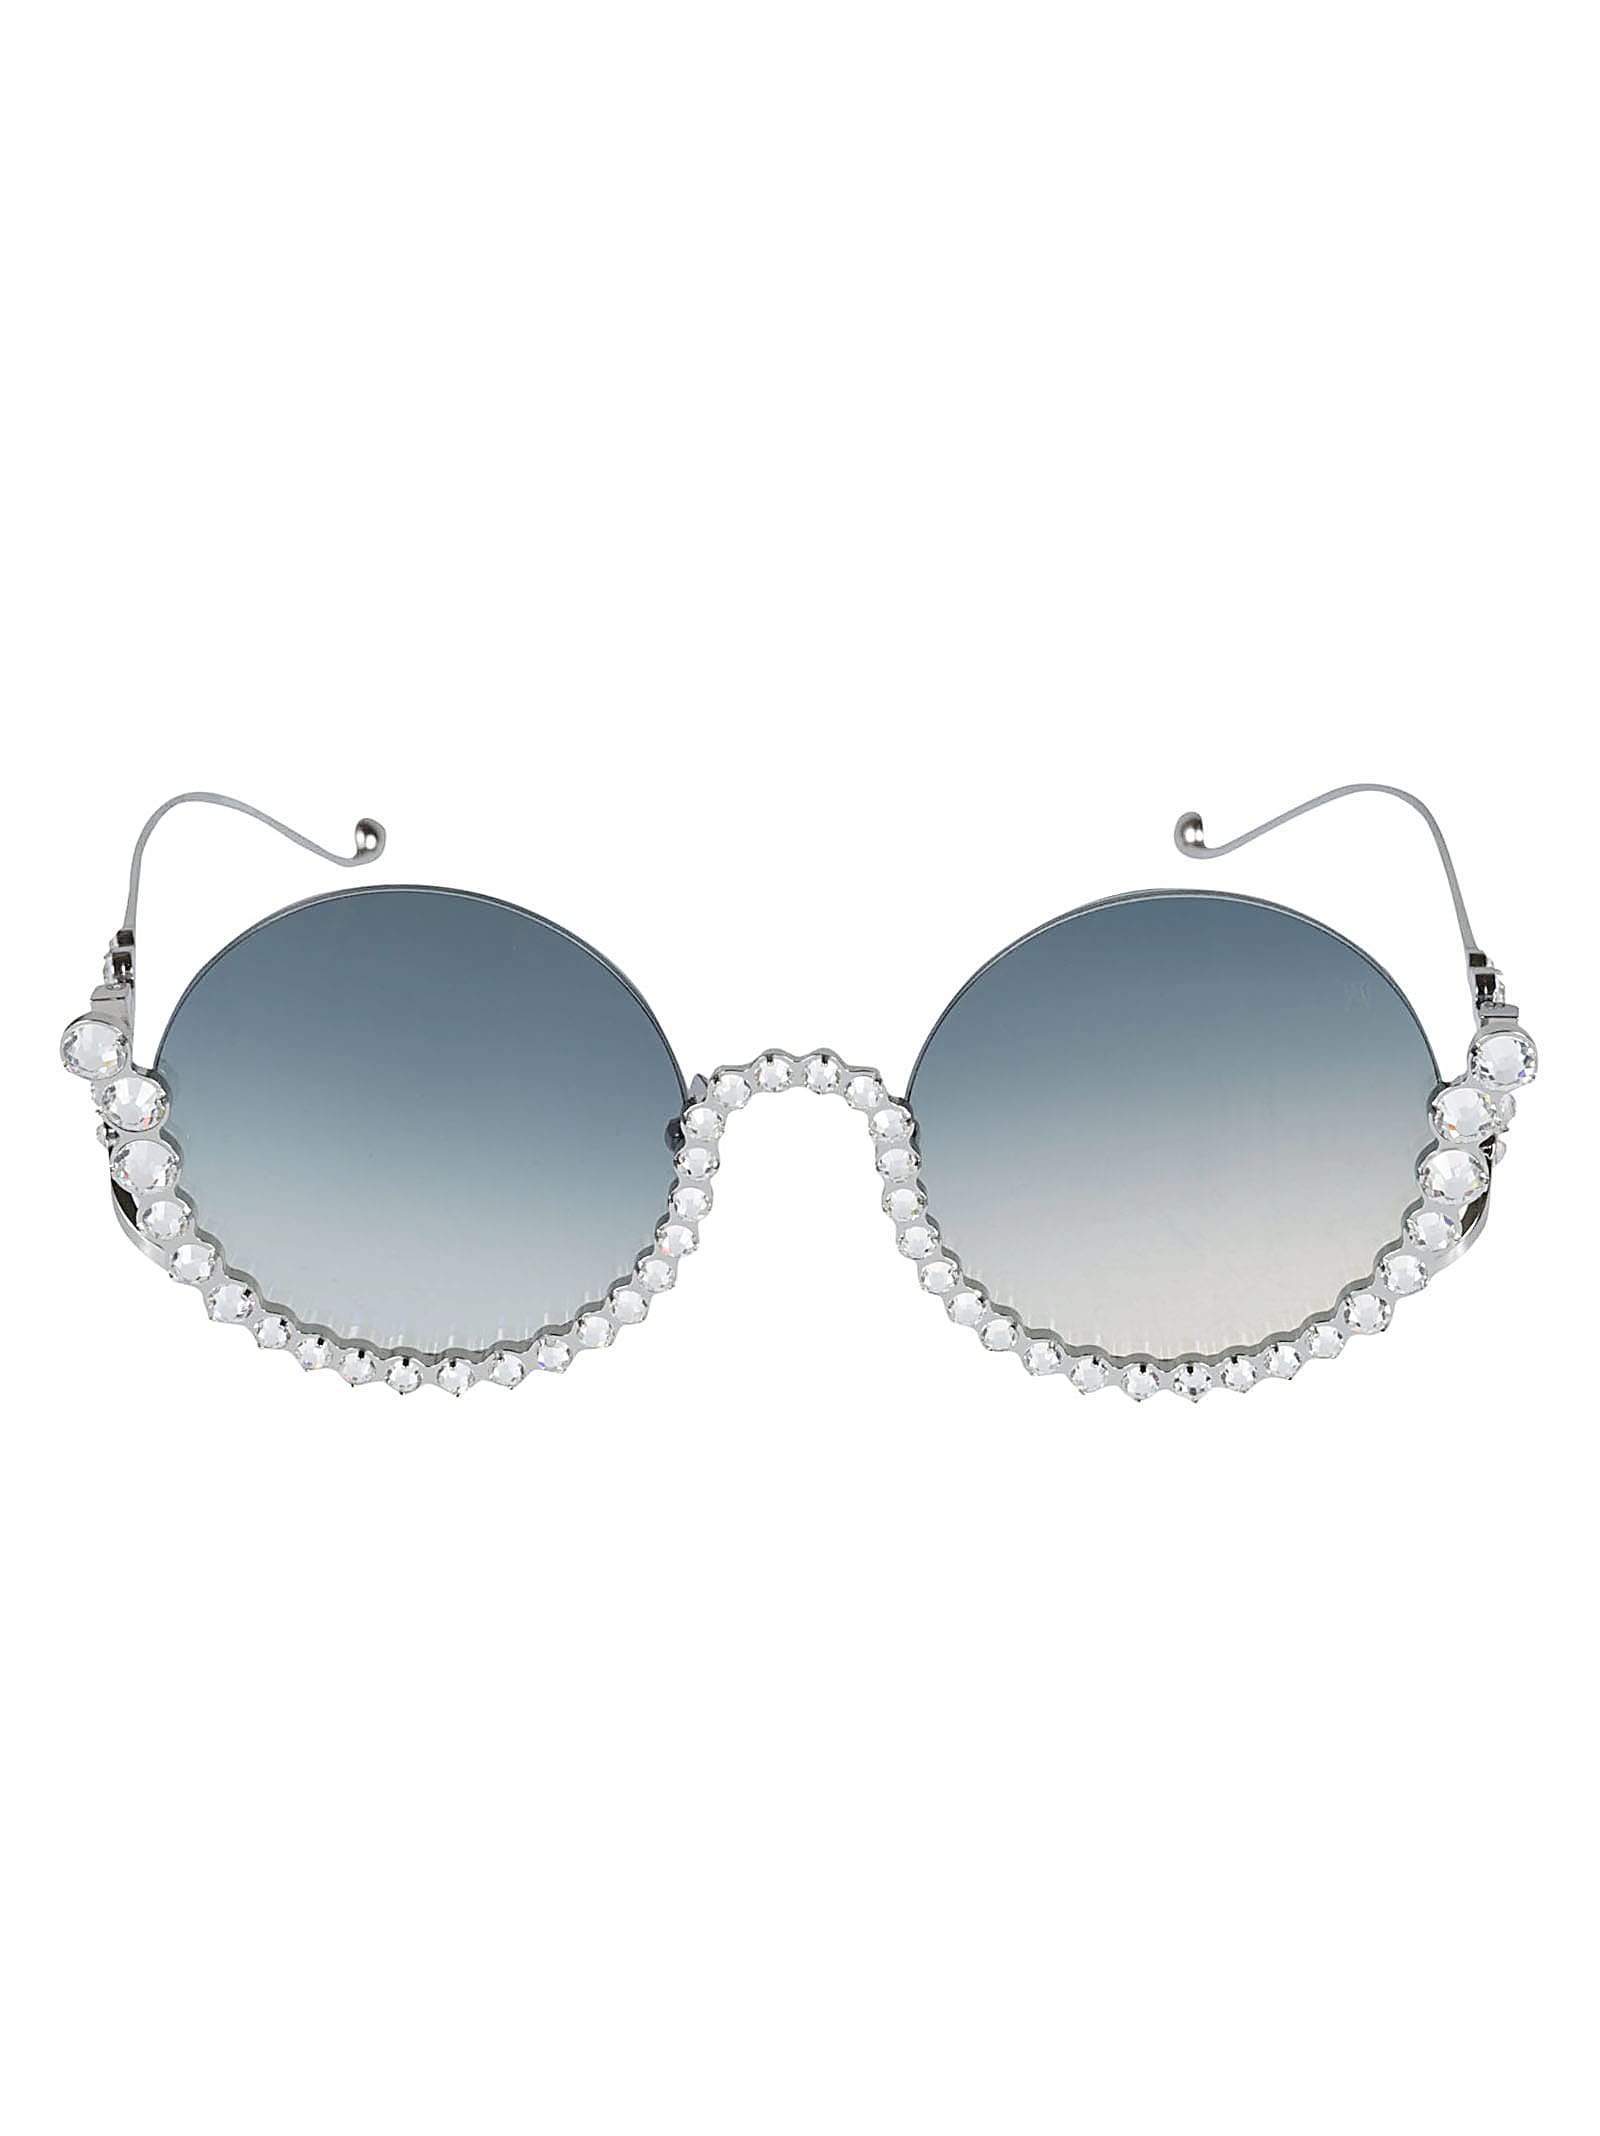 Anna-karin Karlsson Full Sunglasses In Silver | ModeSens